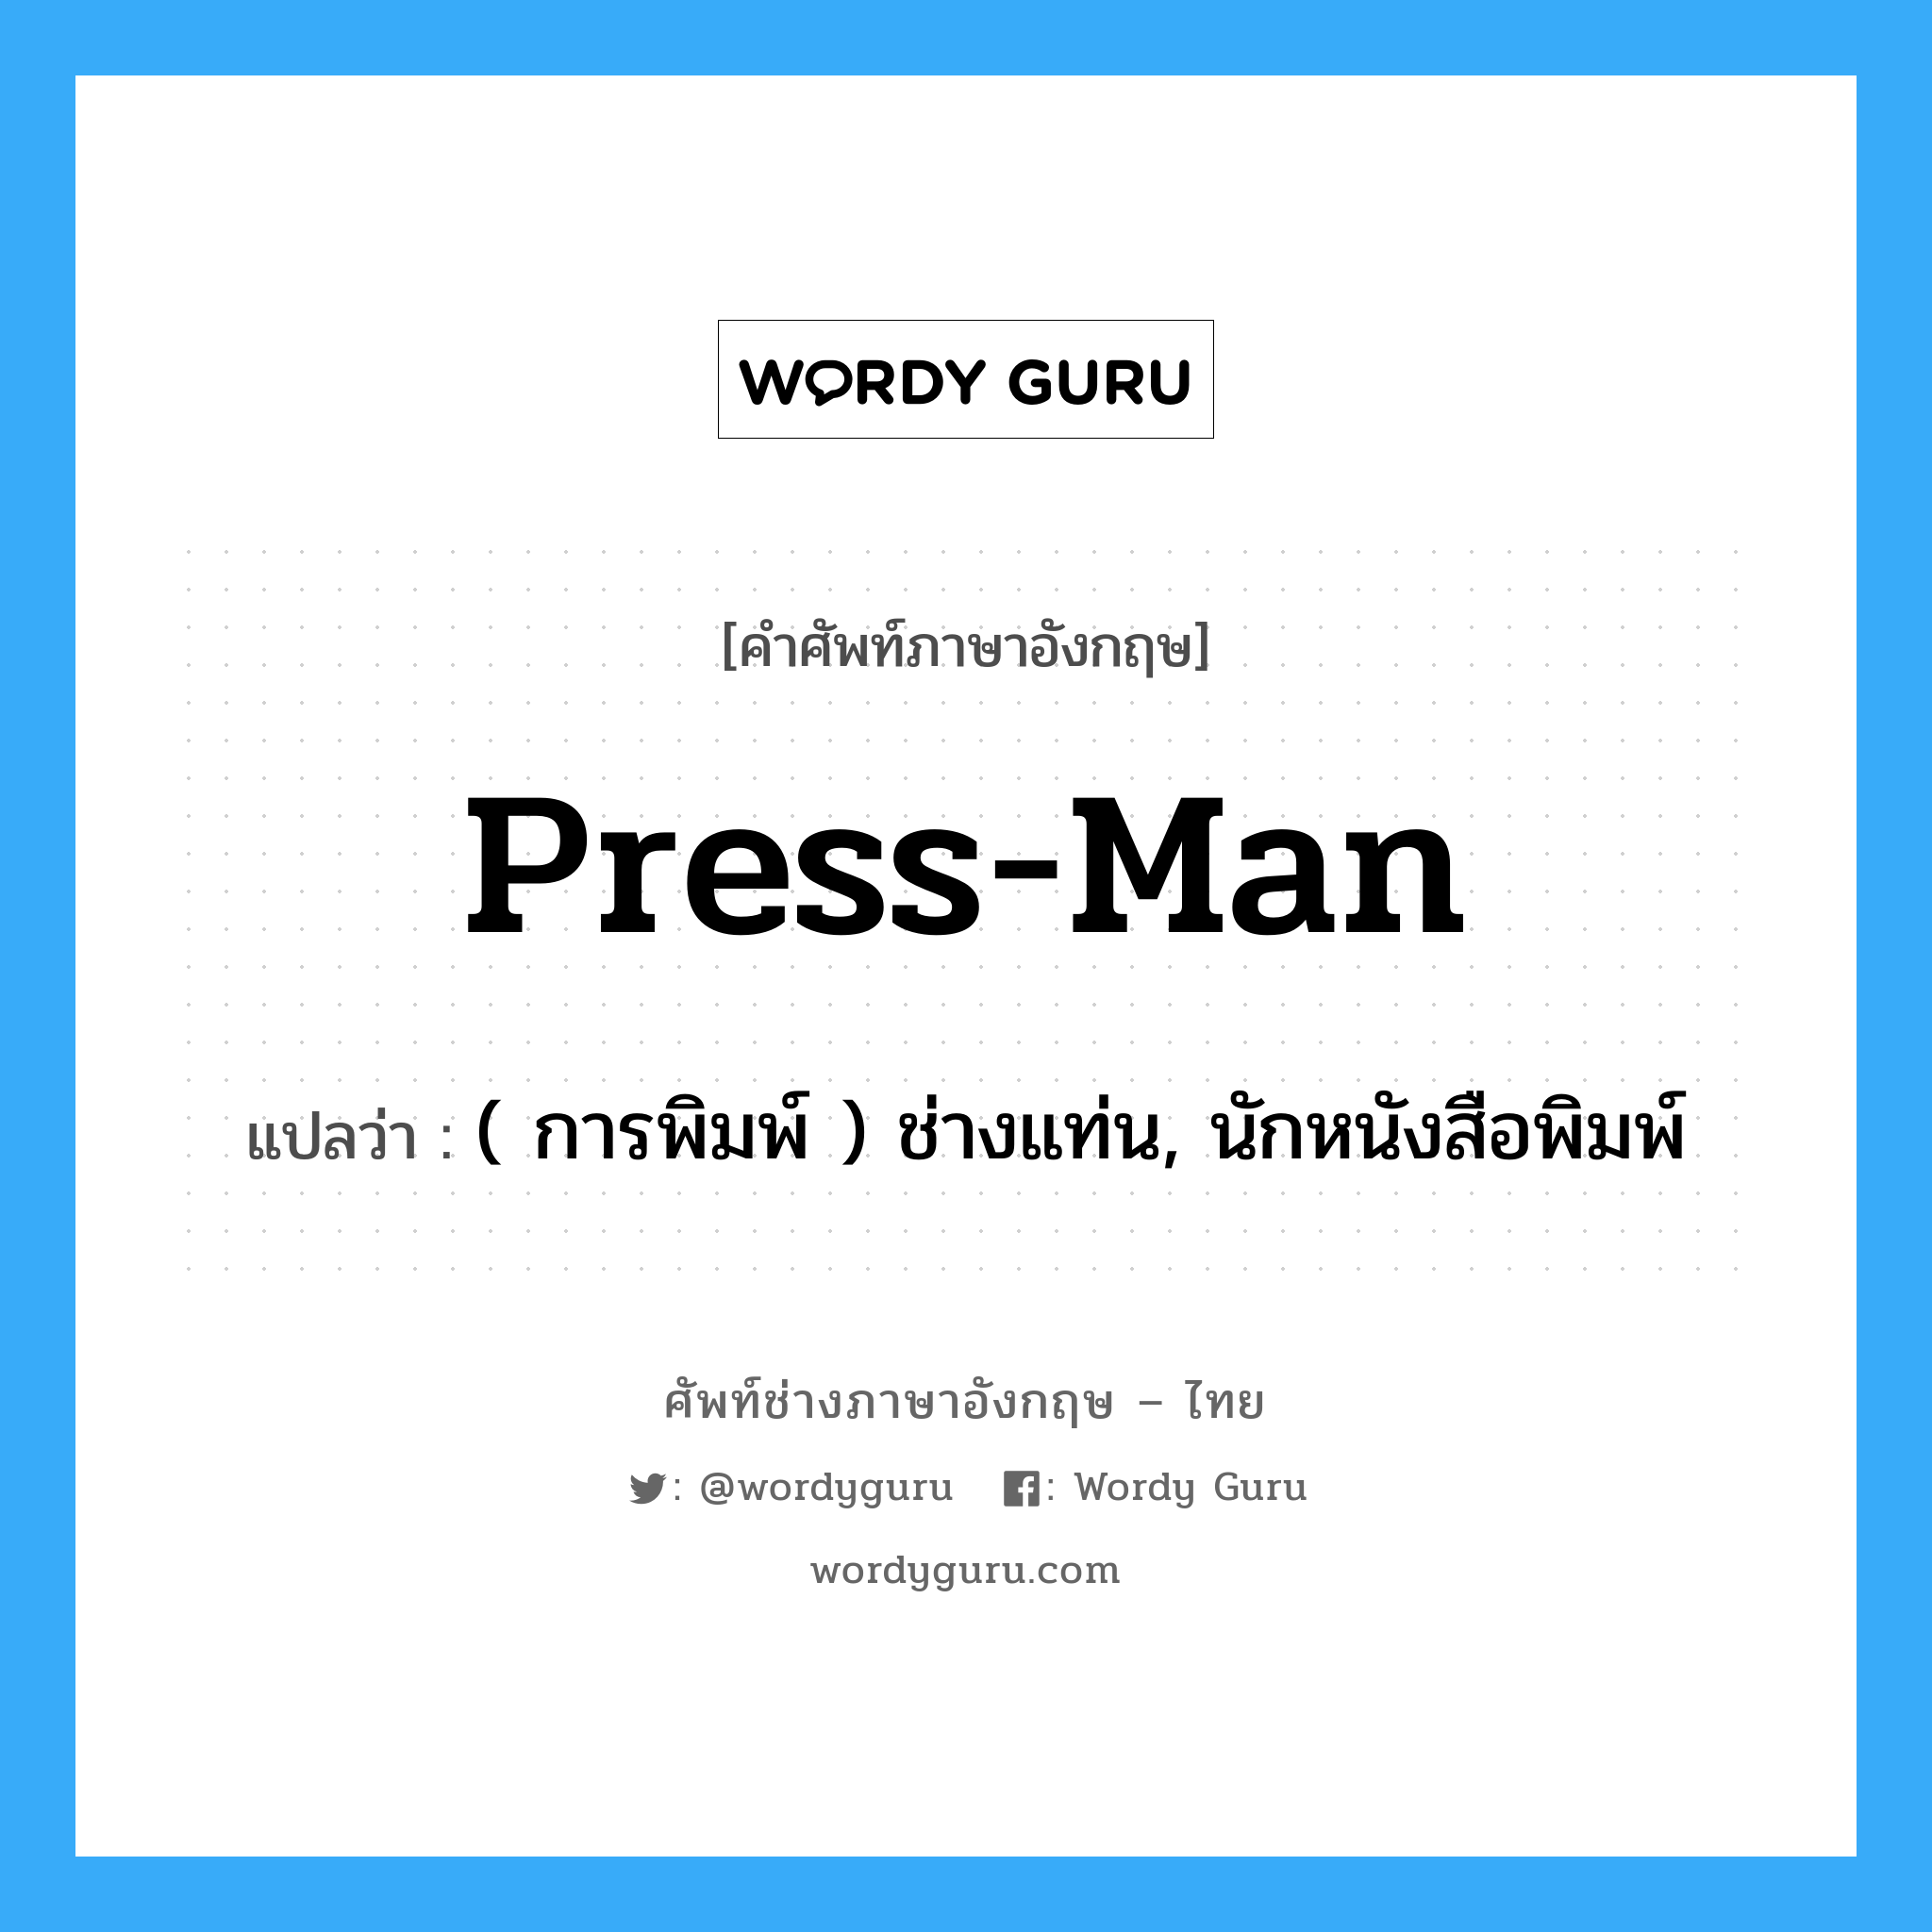 press-man แปลว่า?, คำศัพท์ช่างภาษาอังกฤษ - ไทย press-man คำศัพท์ภาษาอังกฤษ press-man แปลว่า ( การพิมพ์ ) ช่างแท่น, นักหนังสือพิมพ์